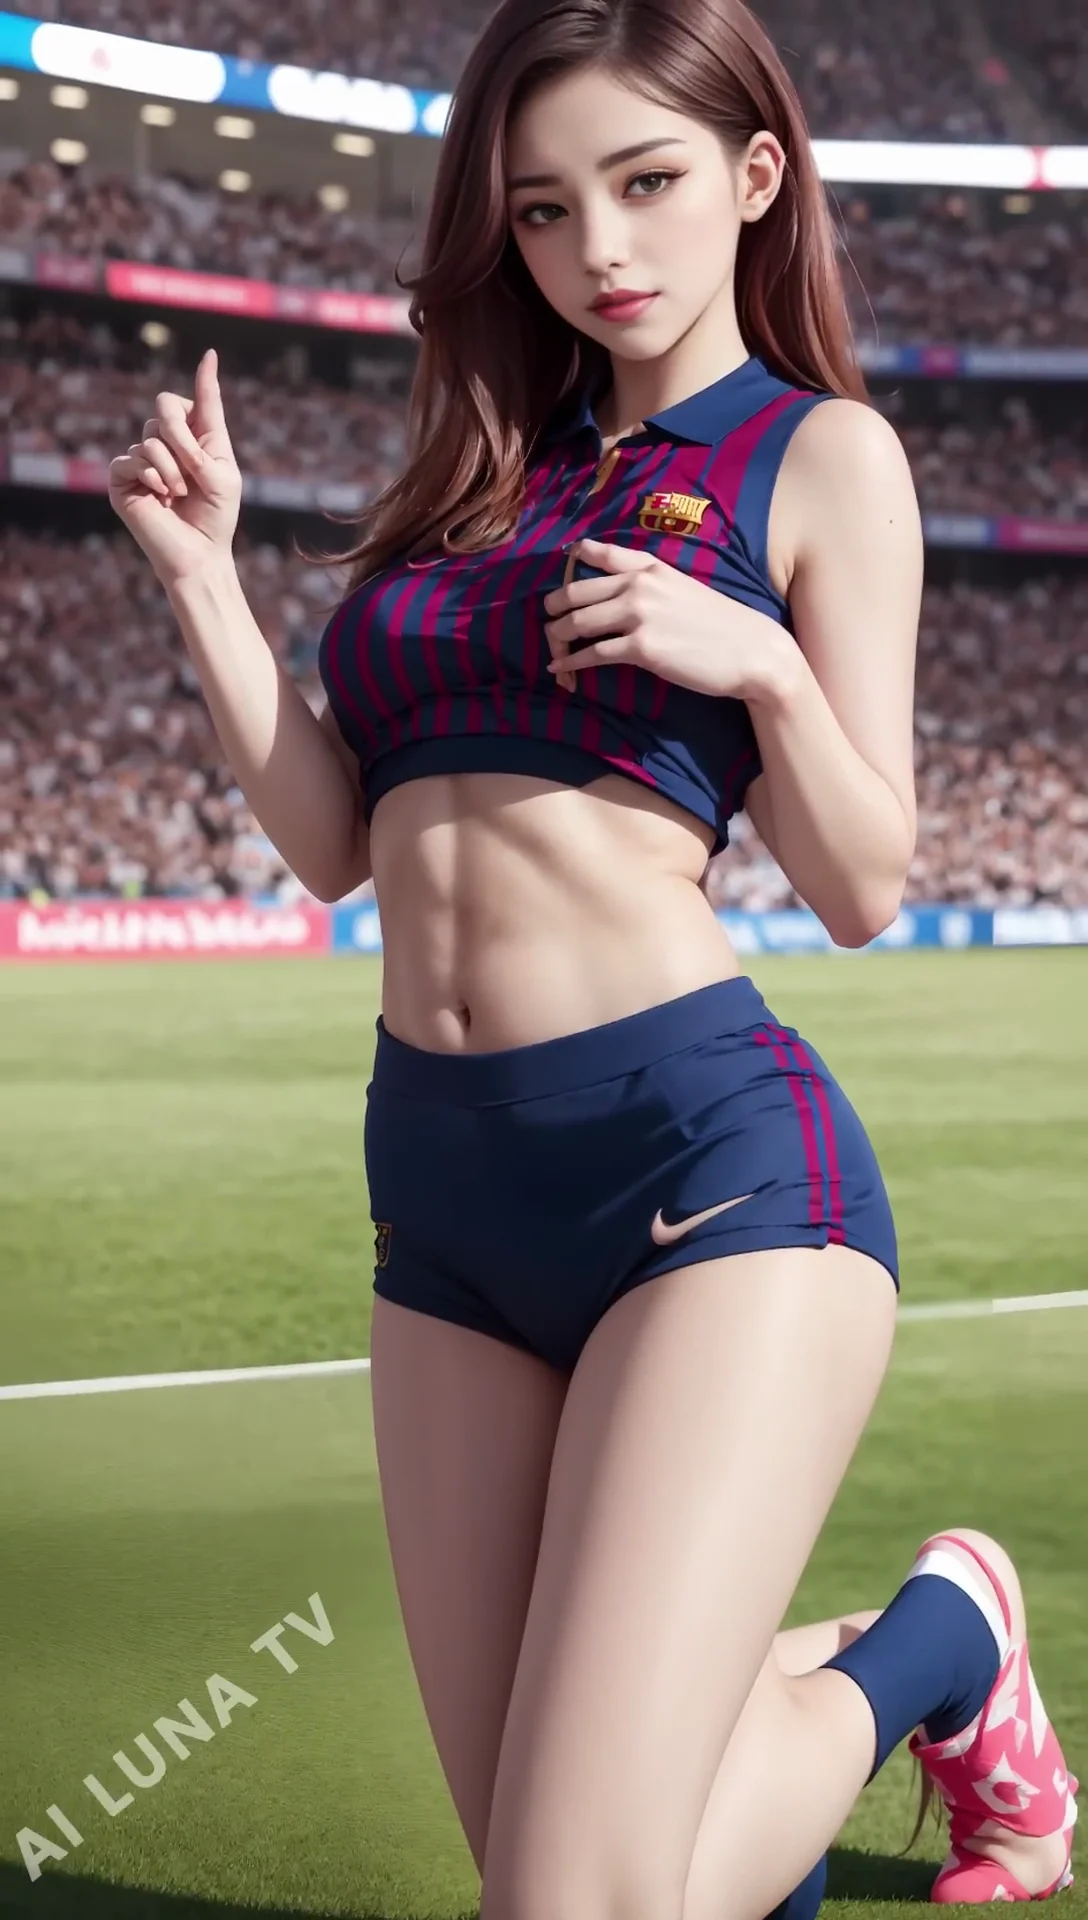 Ai Lookbook FC Barcelona Girl Images - 바르셀로나 걸스 팬 04